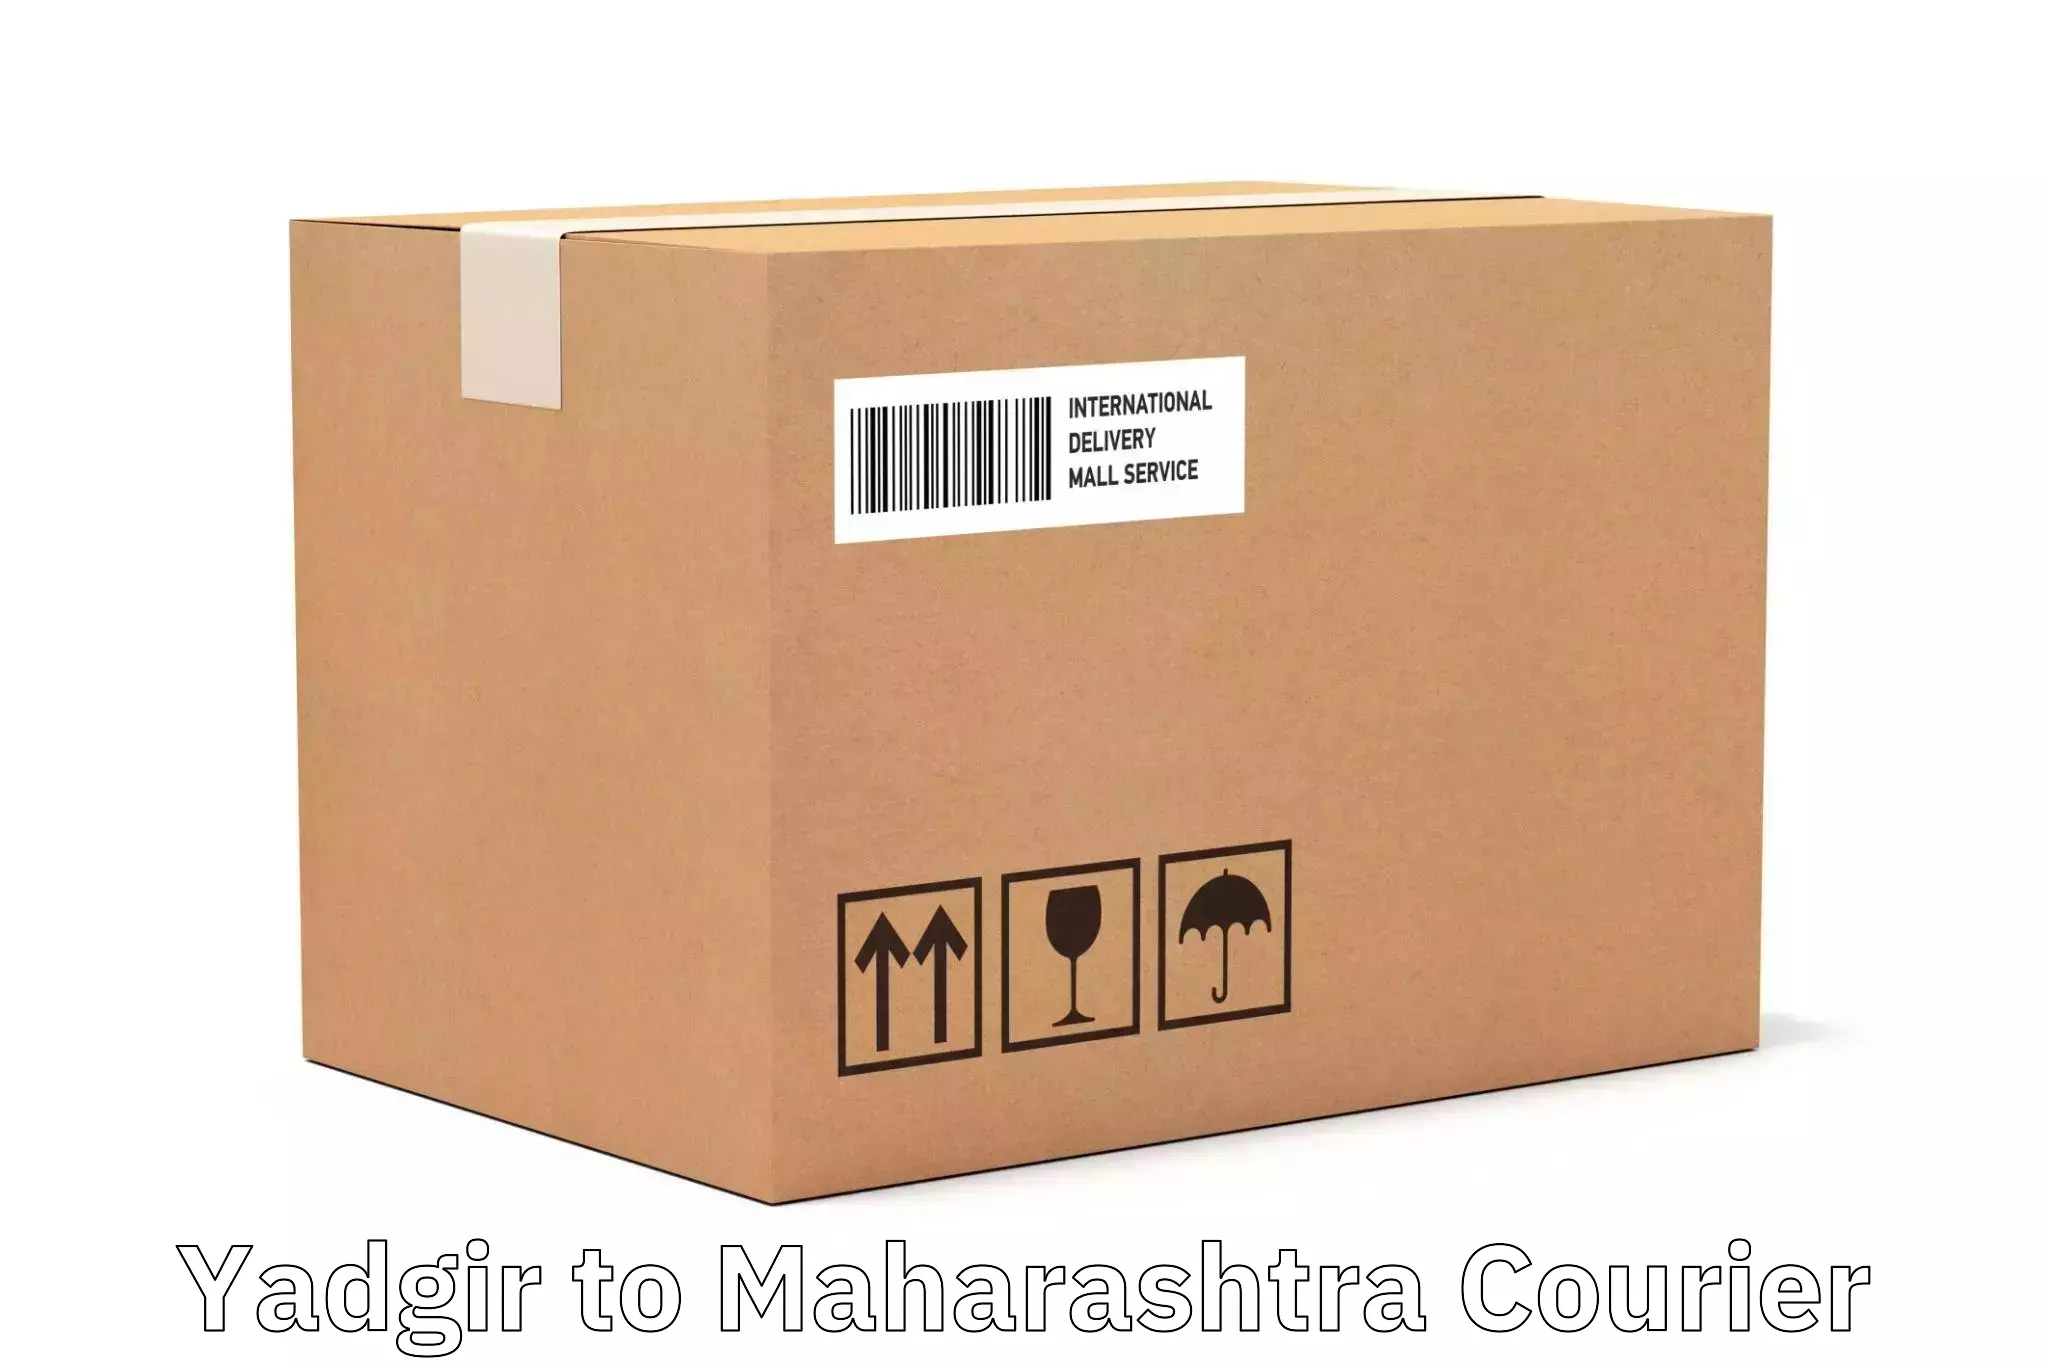 Business shipping needs Yadgir to Navi Mumbai